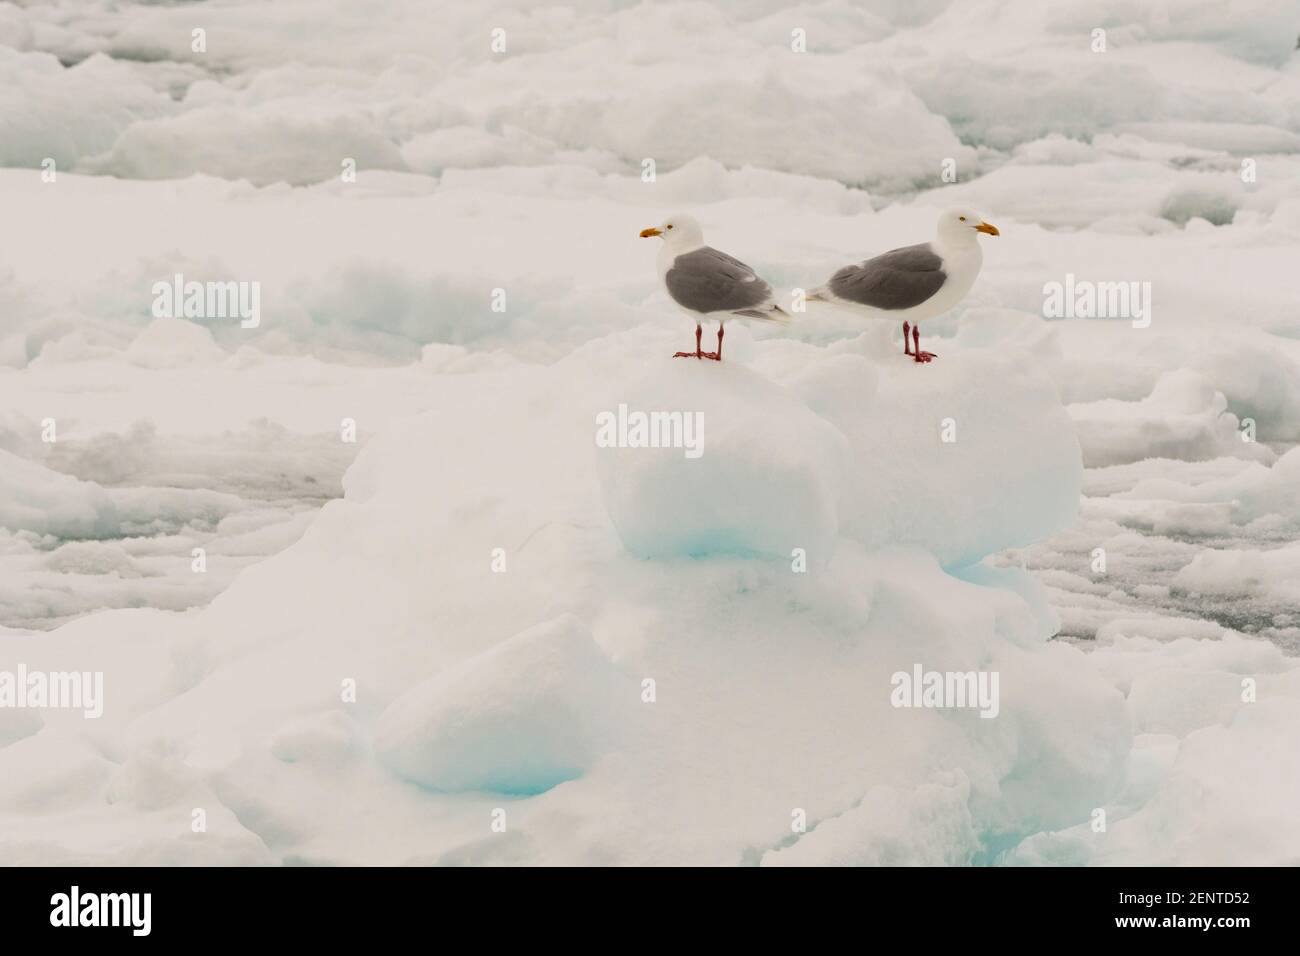 Goélands glaucous, Larus hyperboreus, reposant sur la glace sur la calotte glaciaire polaire. Banque D'Images